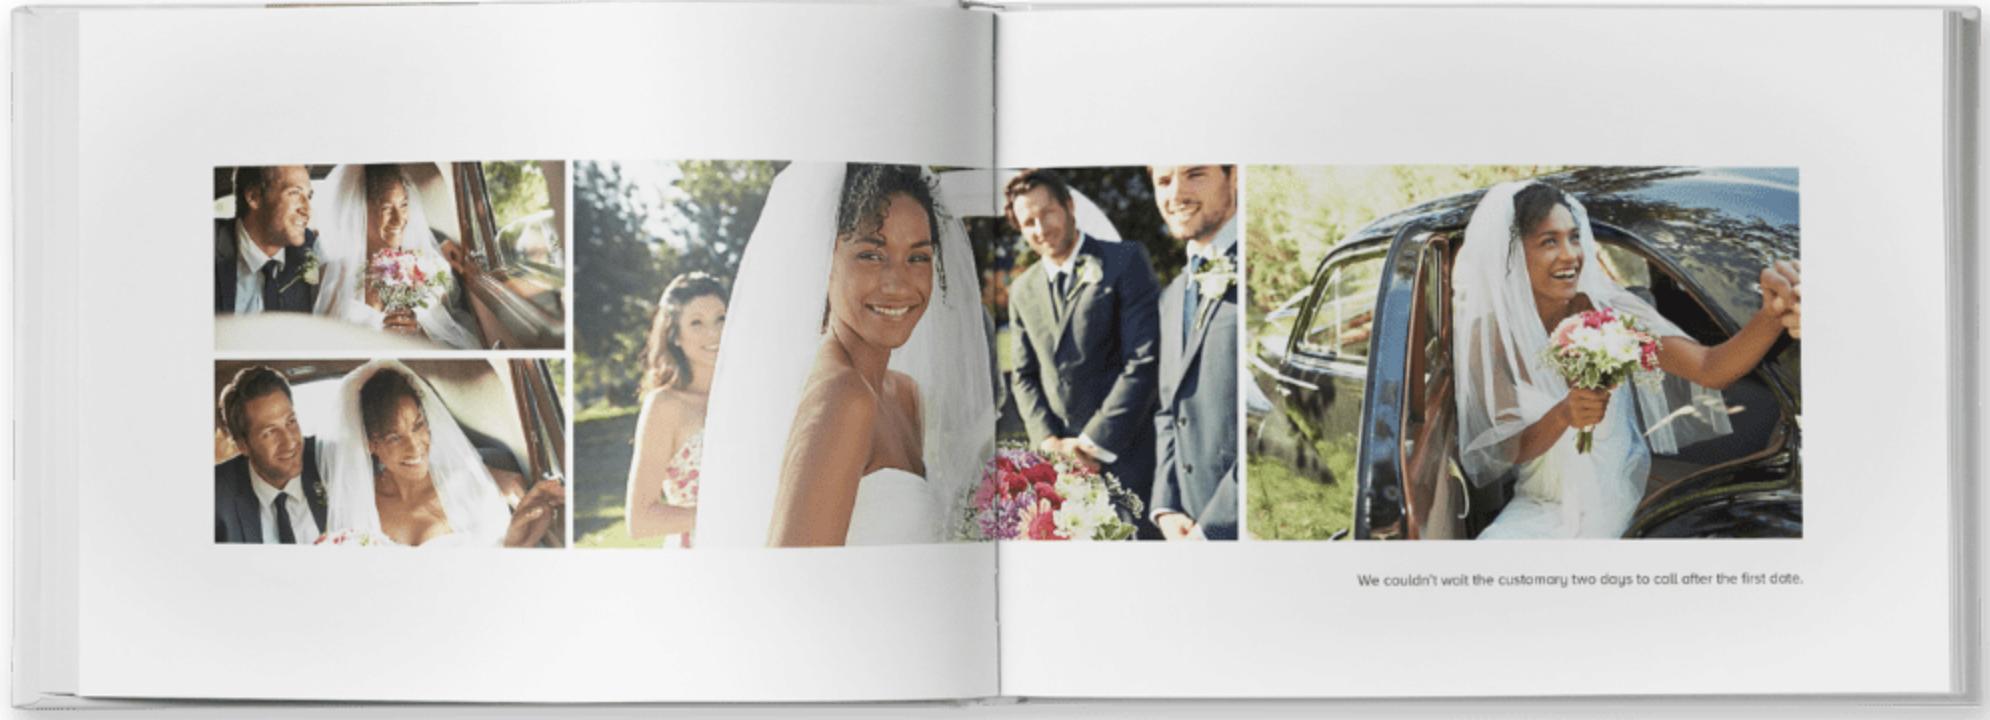 Motif Wedding Photo Albums Render Cropped